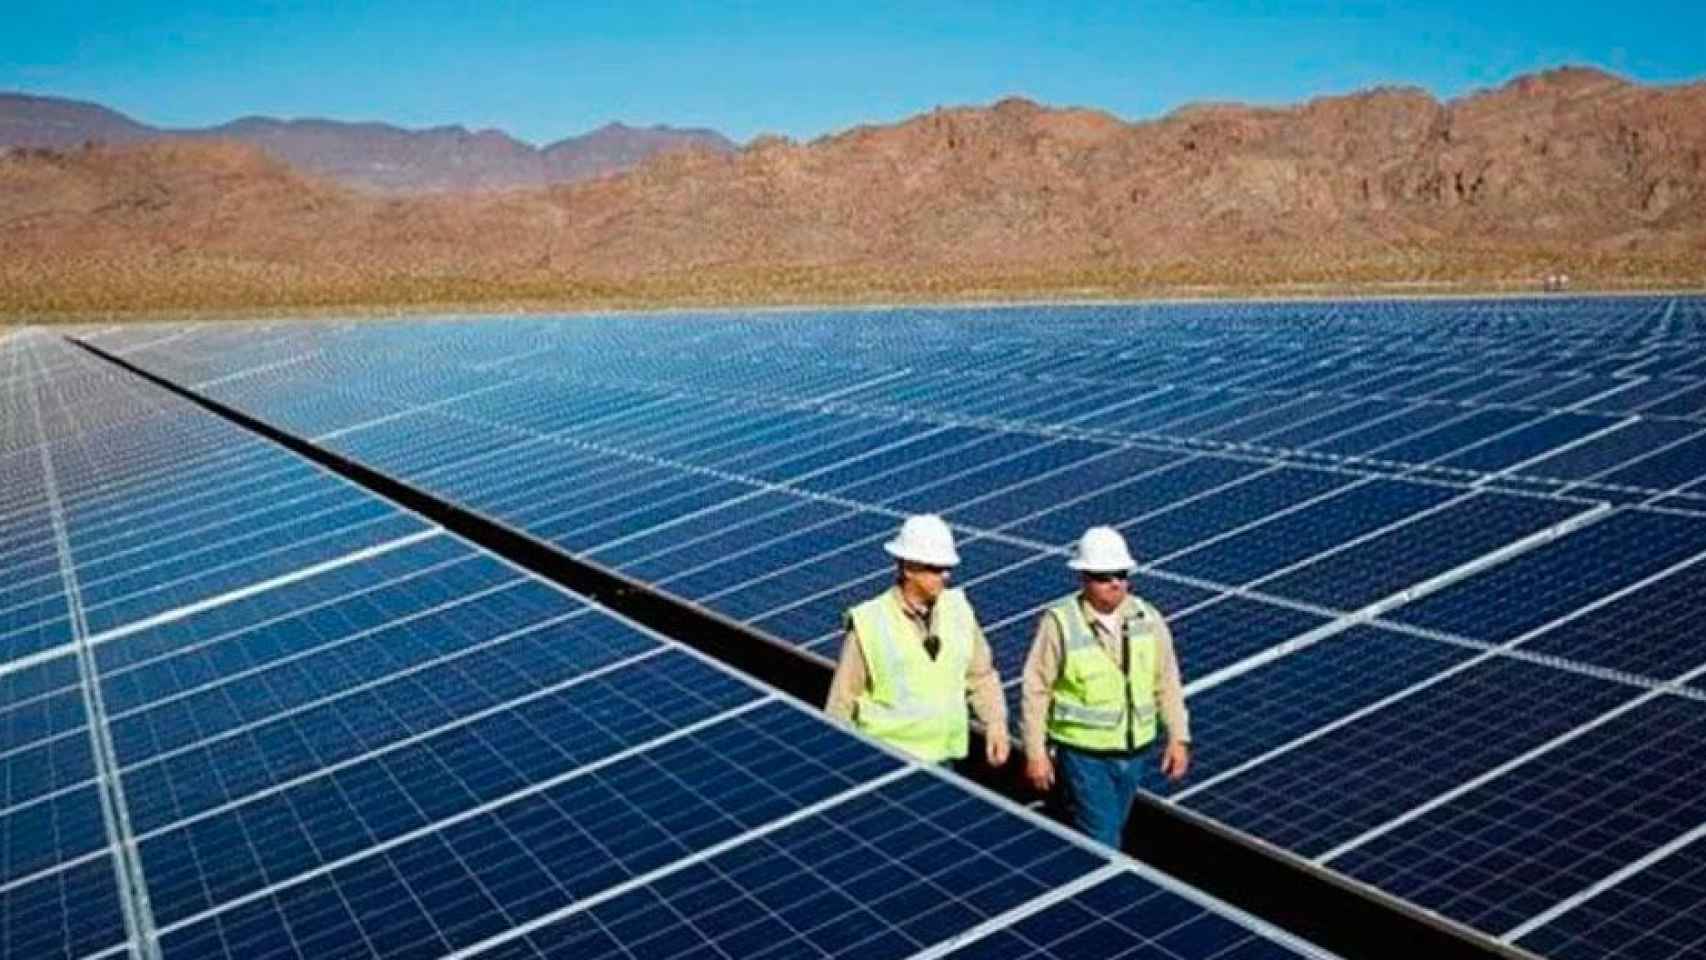 Paneles solares para generar energía fotovoltaica, el negocio de Solar360 / EFE